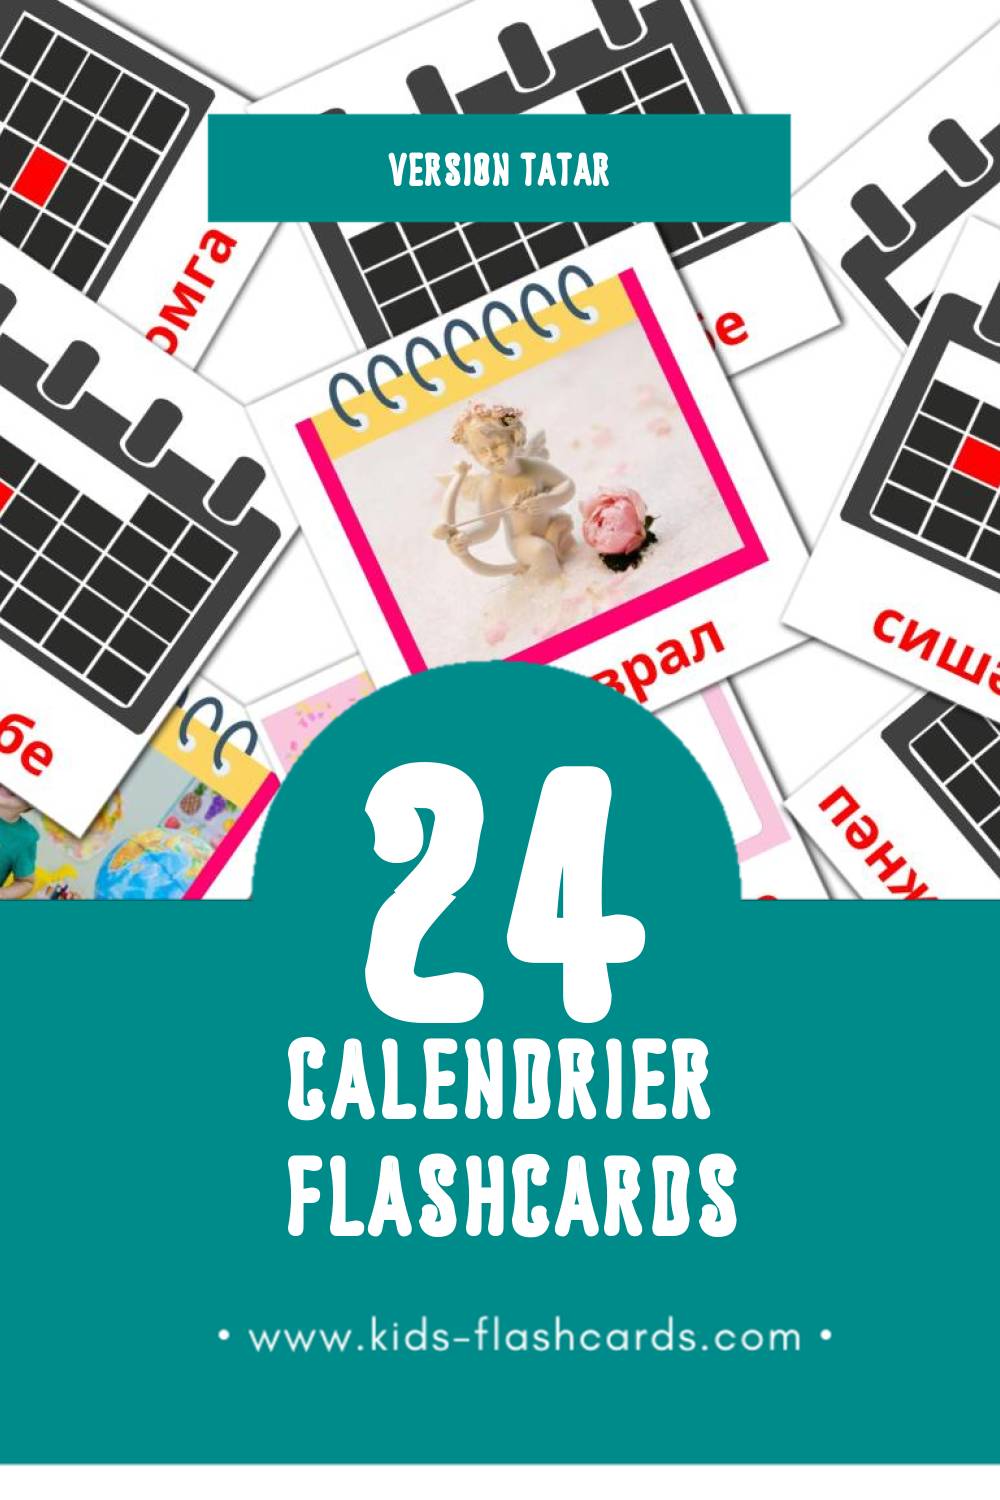 Flashcards Visual календарь pour les tout-petits (12 cartes en Tatar)